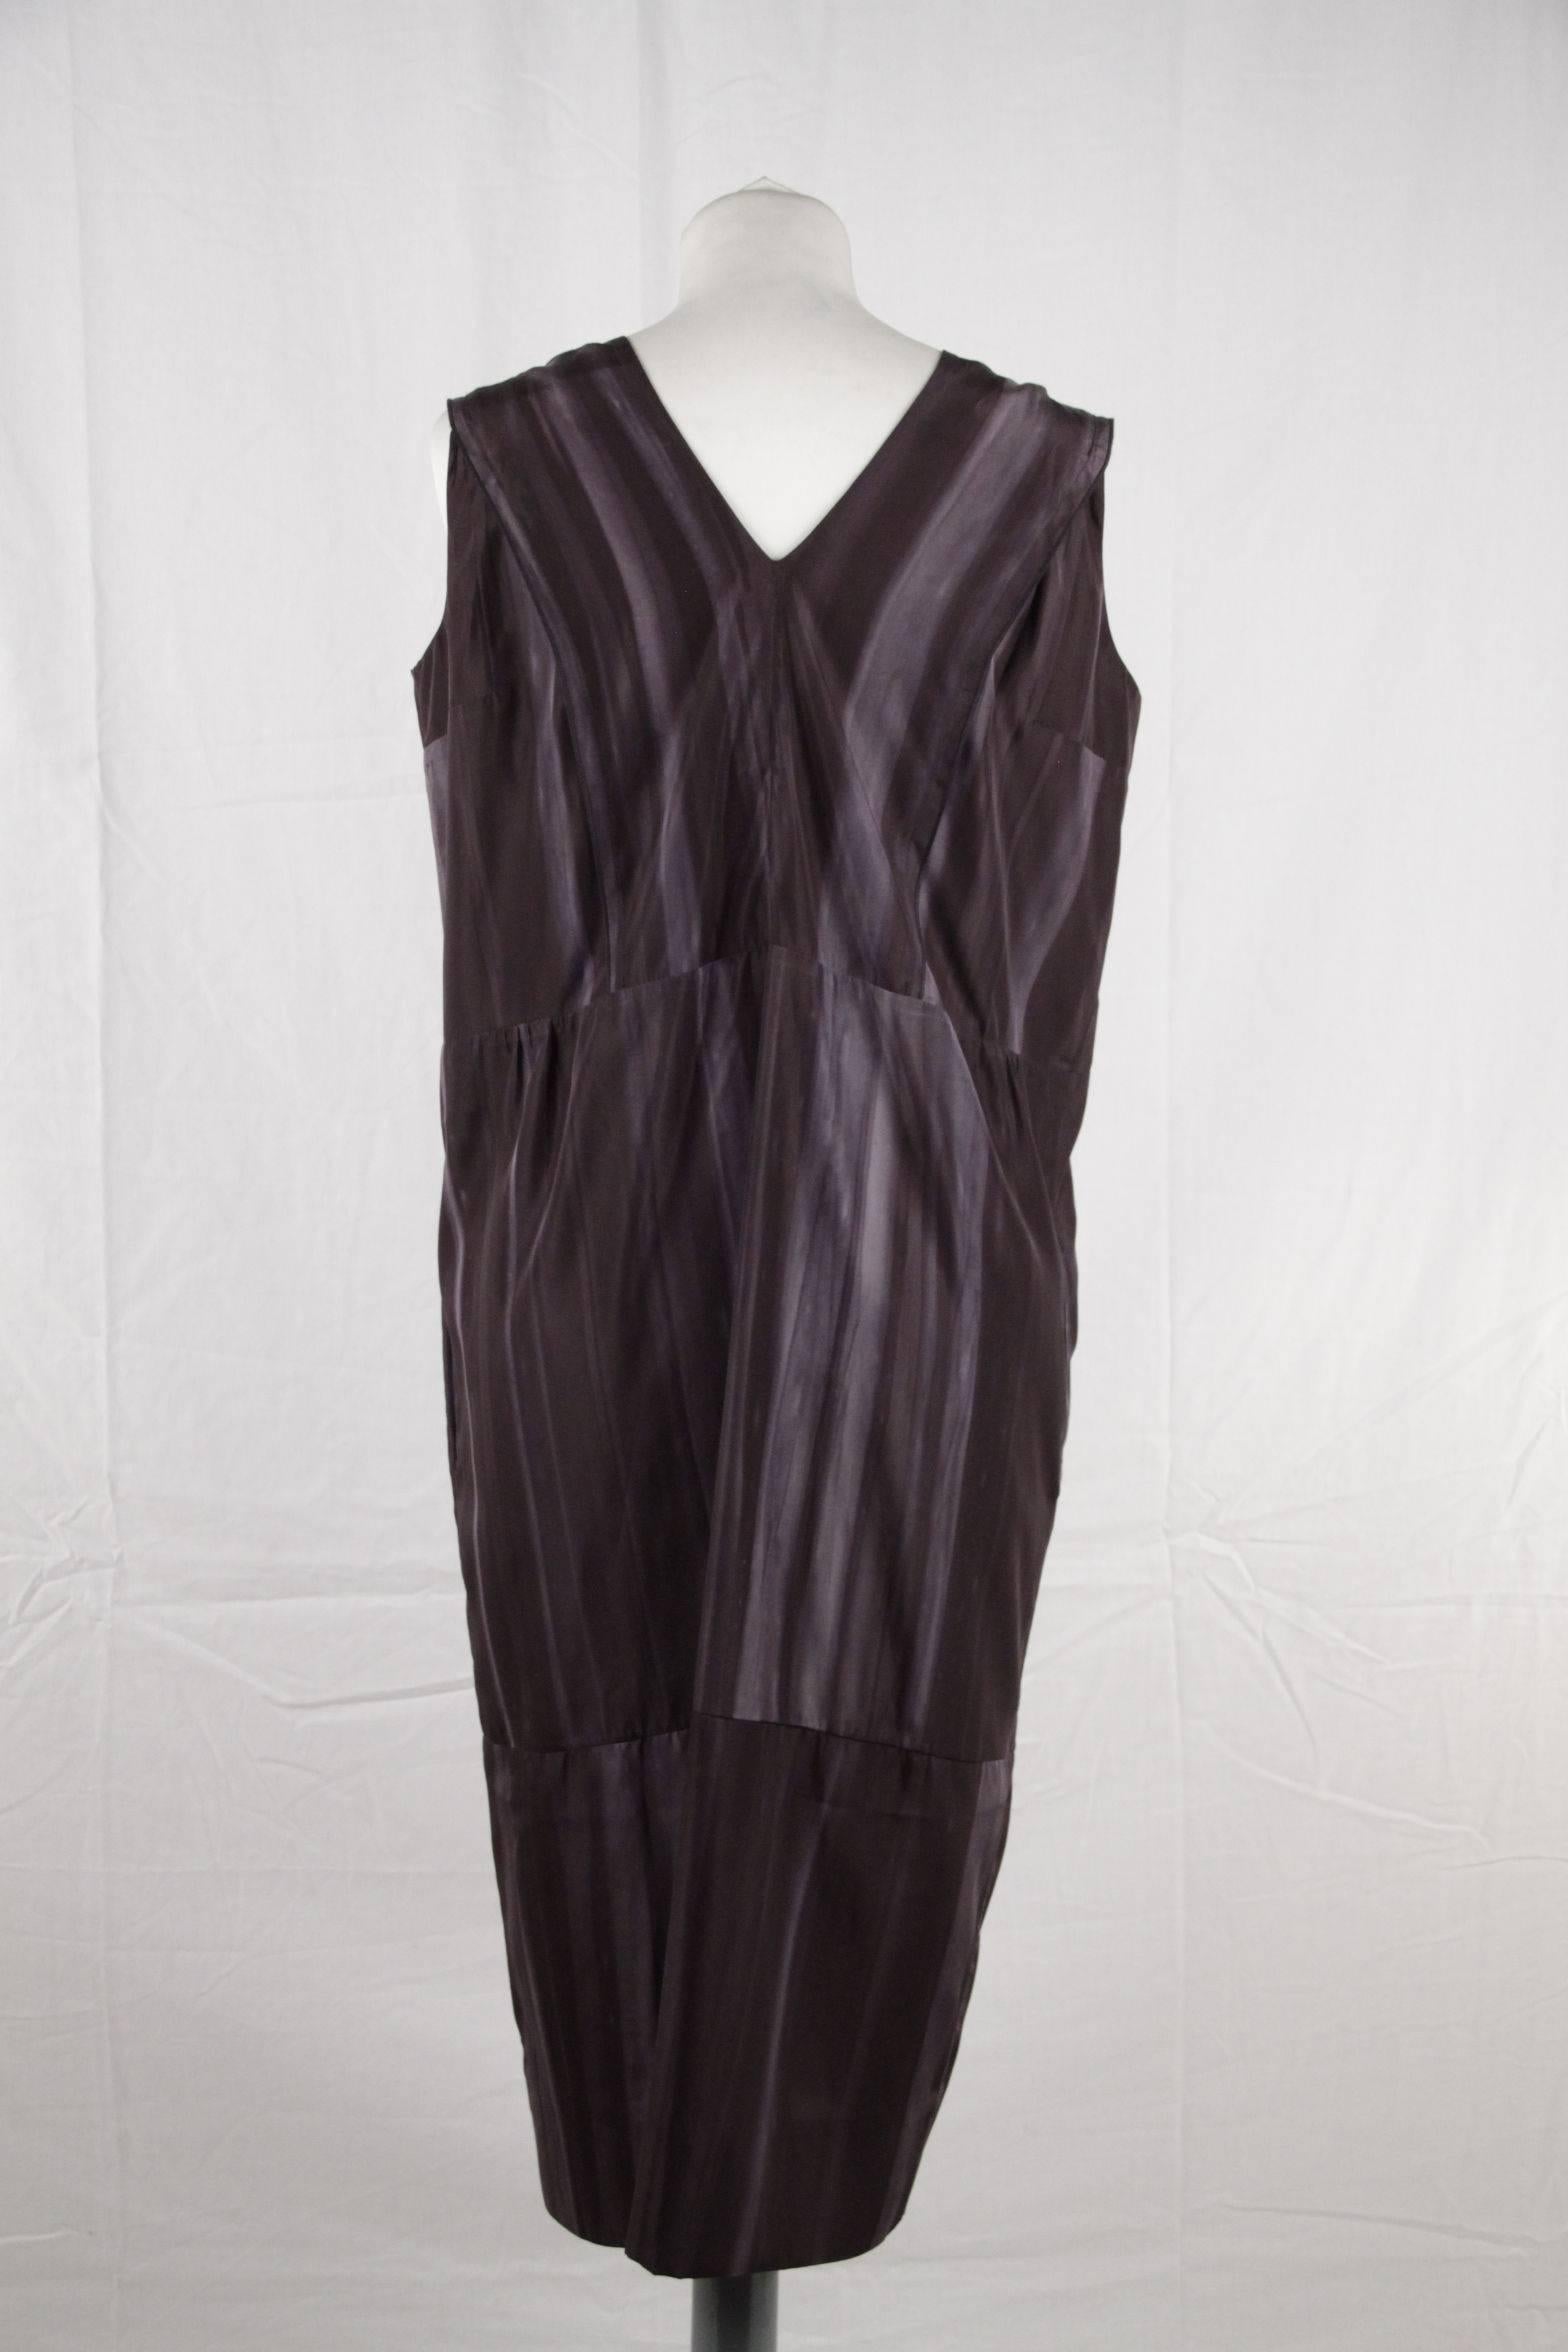 Women's  MARNI Silky Dye Pattern SLEEVELESS DRESS w/ FRILLS SIZE 40